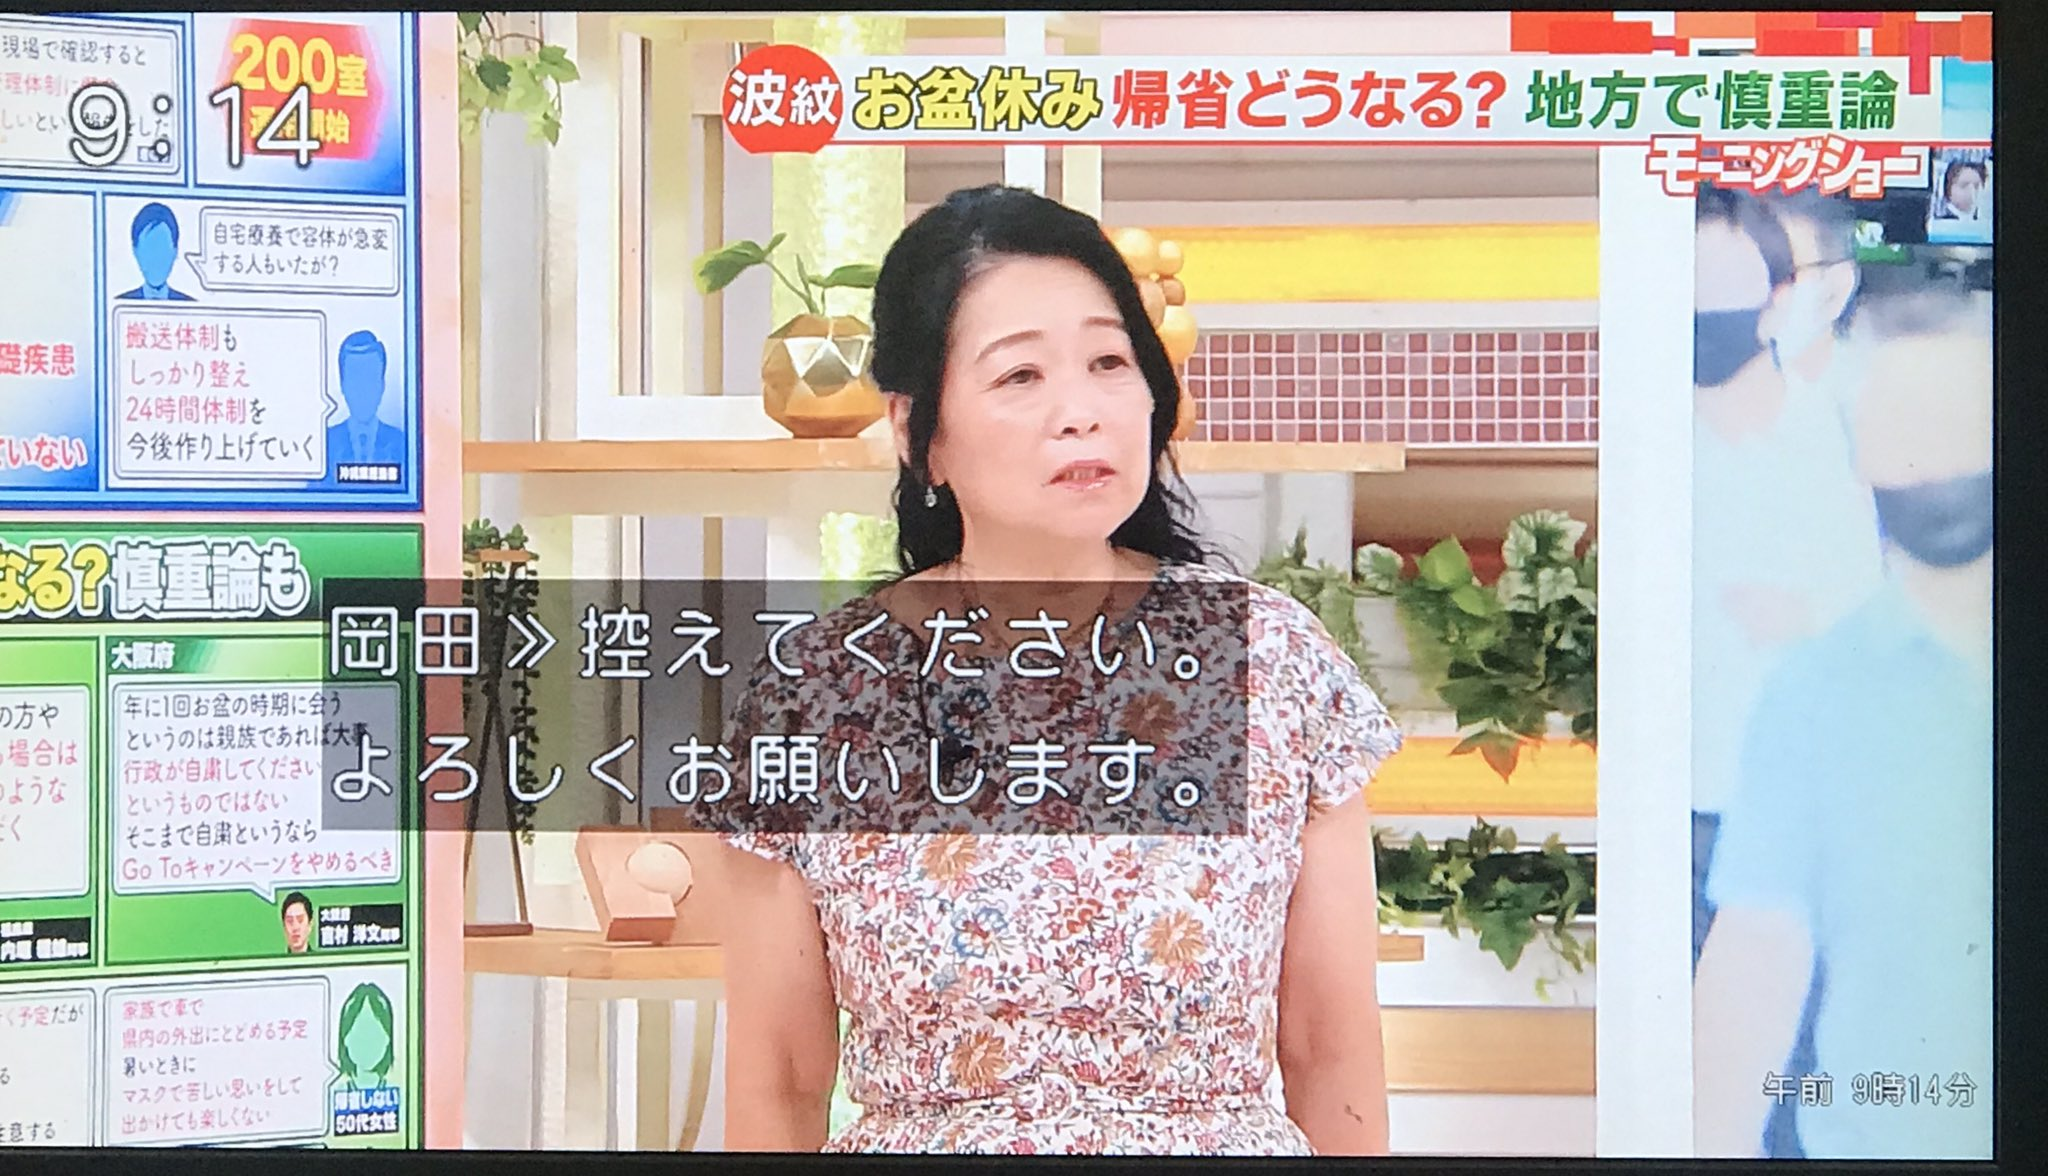 岡田先生 モーニングショー 岡田晴恵さん、2分で5万円稼いでしまう。またモーニングショーか…